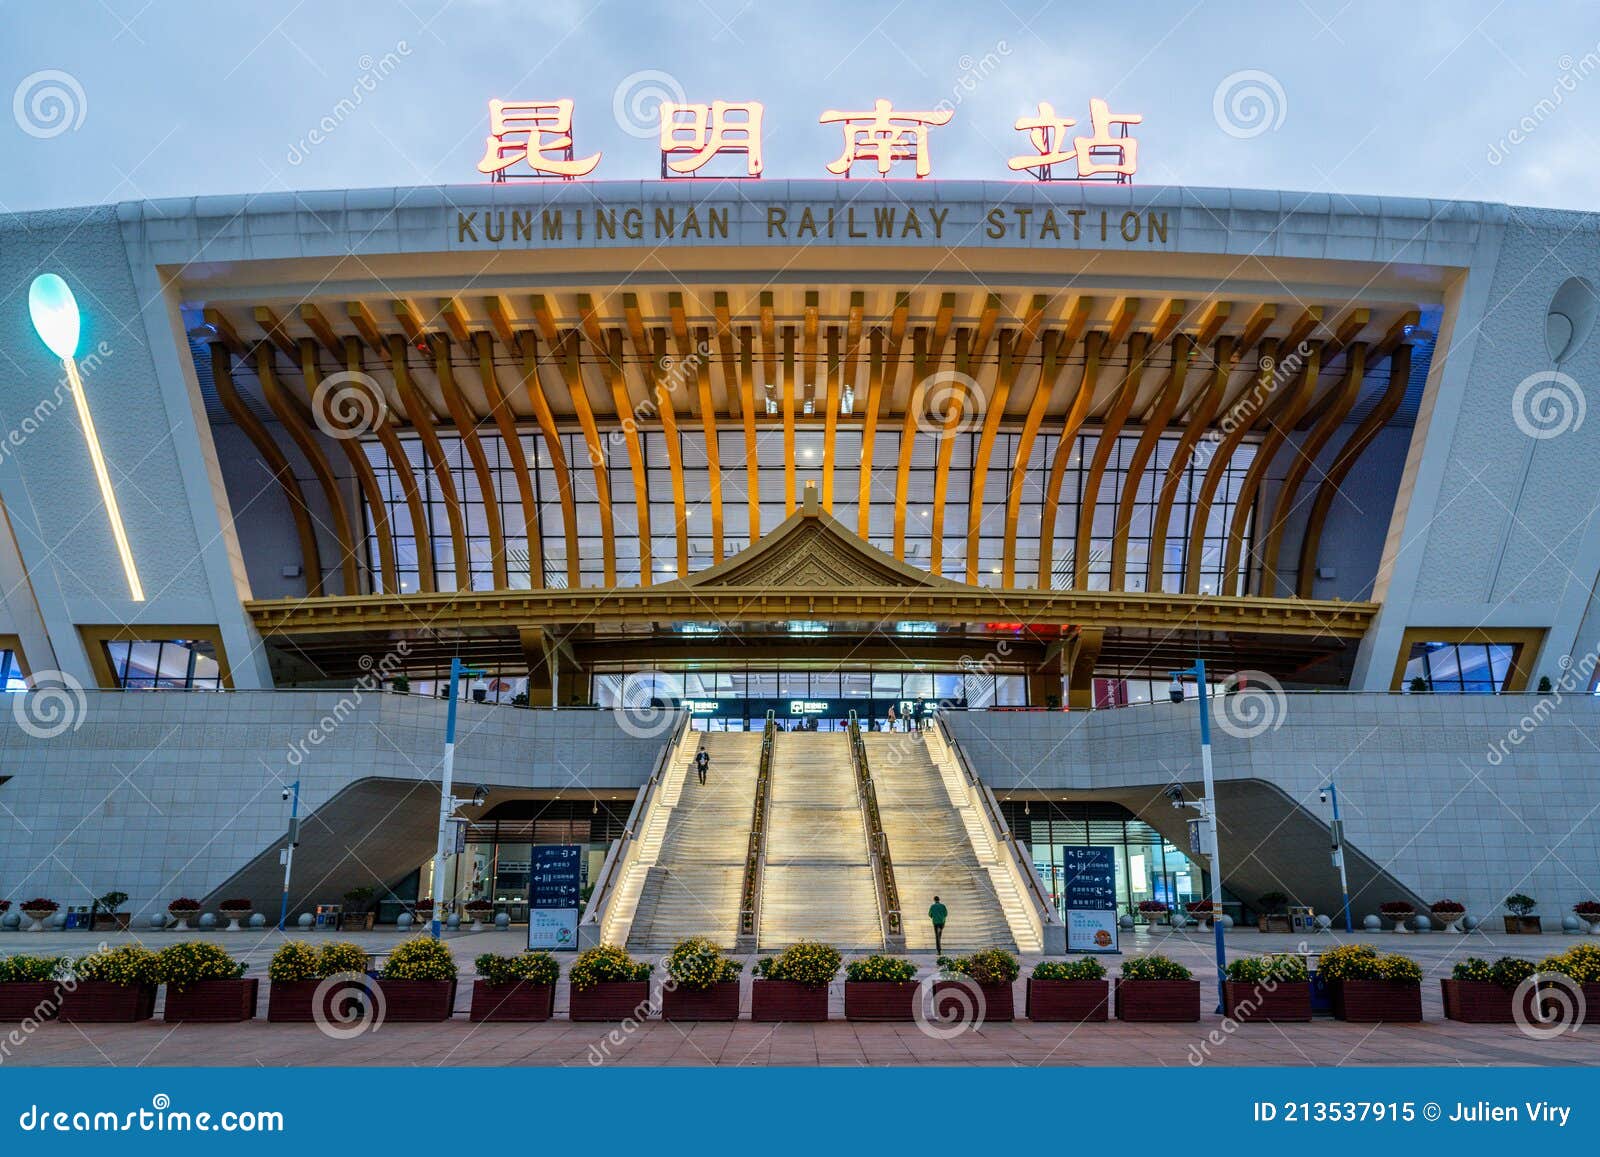 2023云南铁路博物馆游玩攻略,馆内大多数篇幅呈现如此辉煌...【去哪儿攻略】